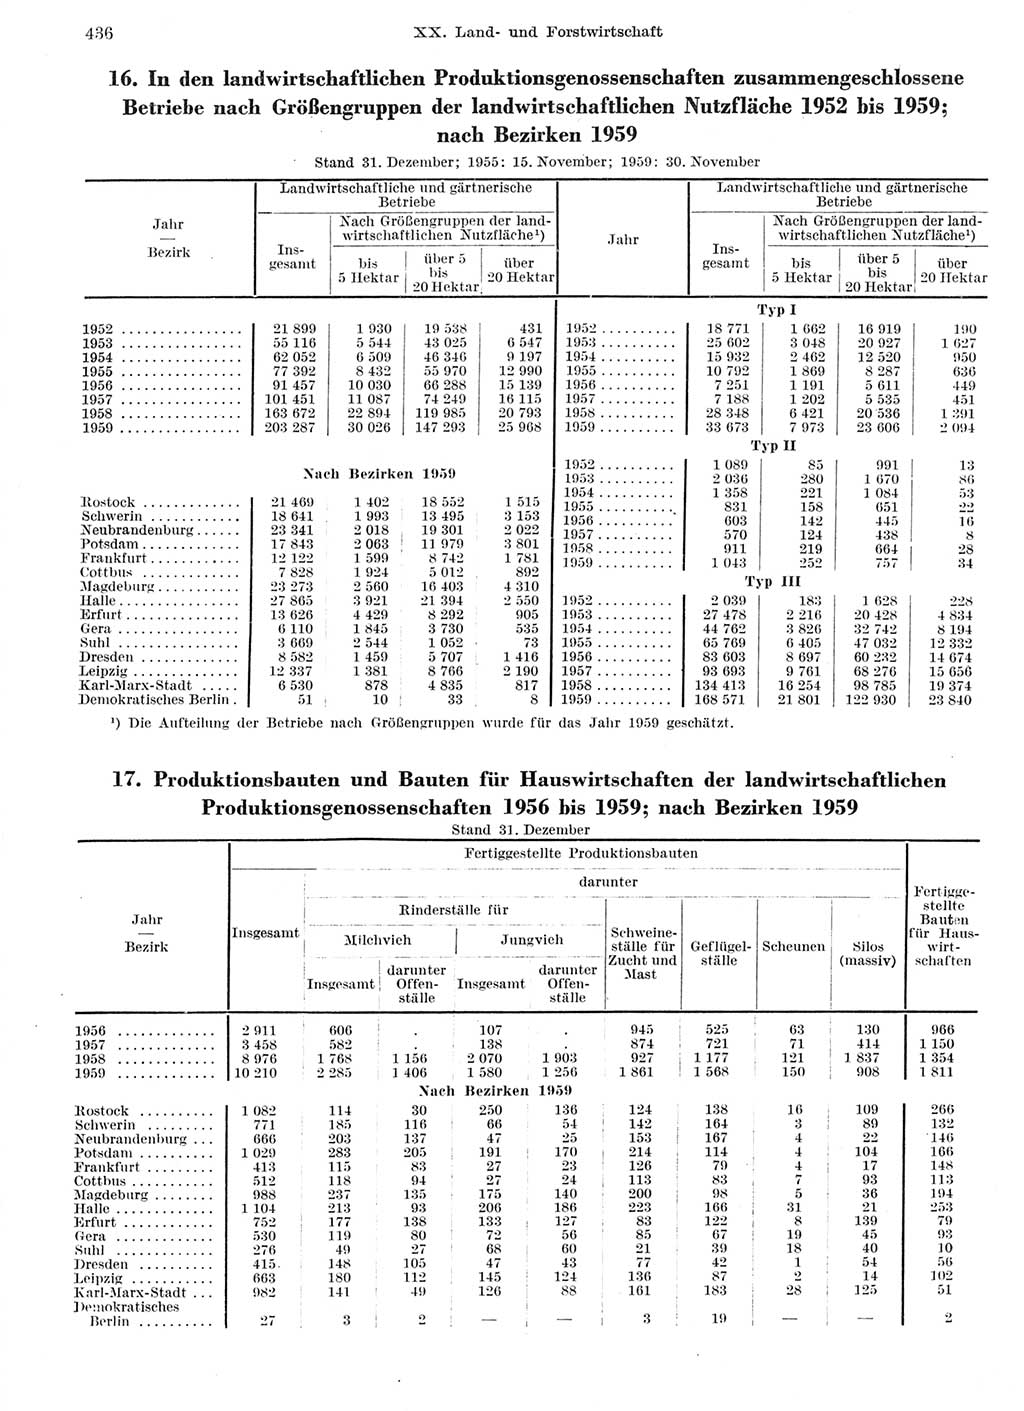 Statistisches Jahrbuch der Deutschen Demokratischen Republik (DDR) 1959, Seite 436 (Stat. Jb. DDR 1959, S. 436)